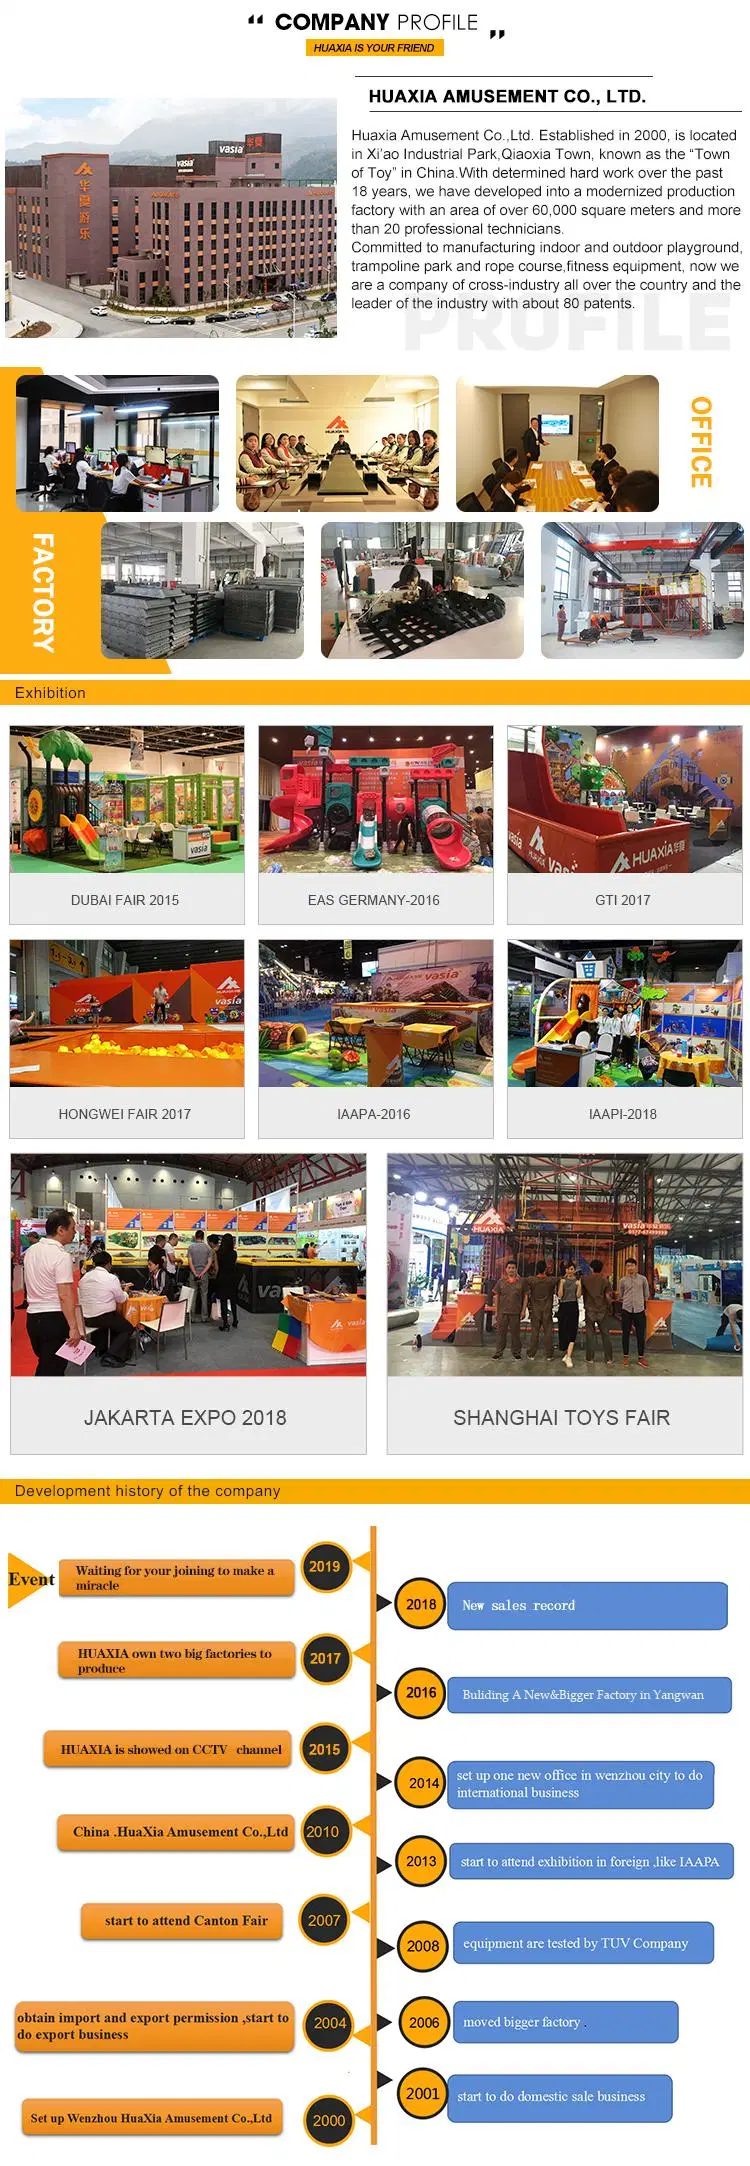 Large Size Complex Amusement Park Children Sport Indoor Playground Equipment with Slide